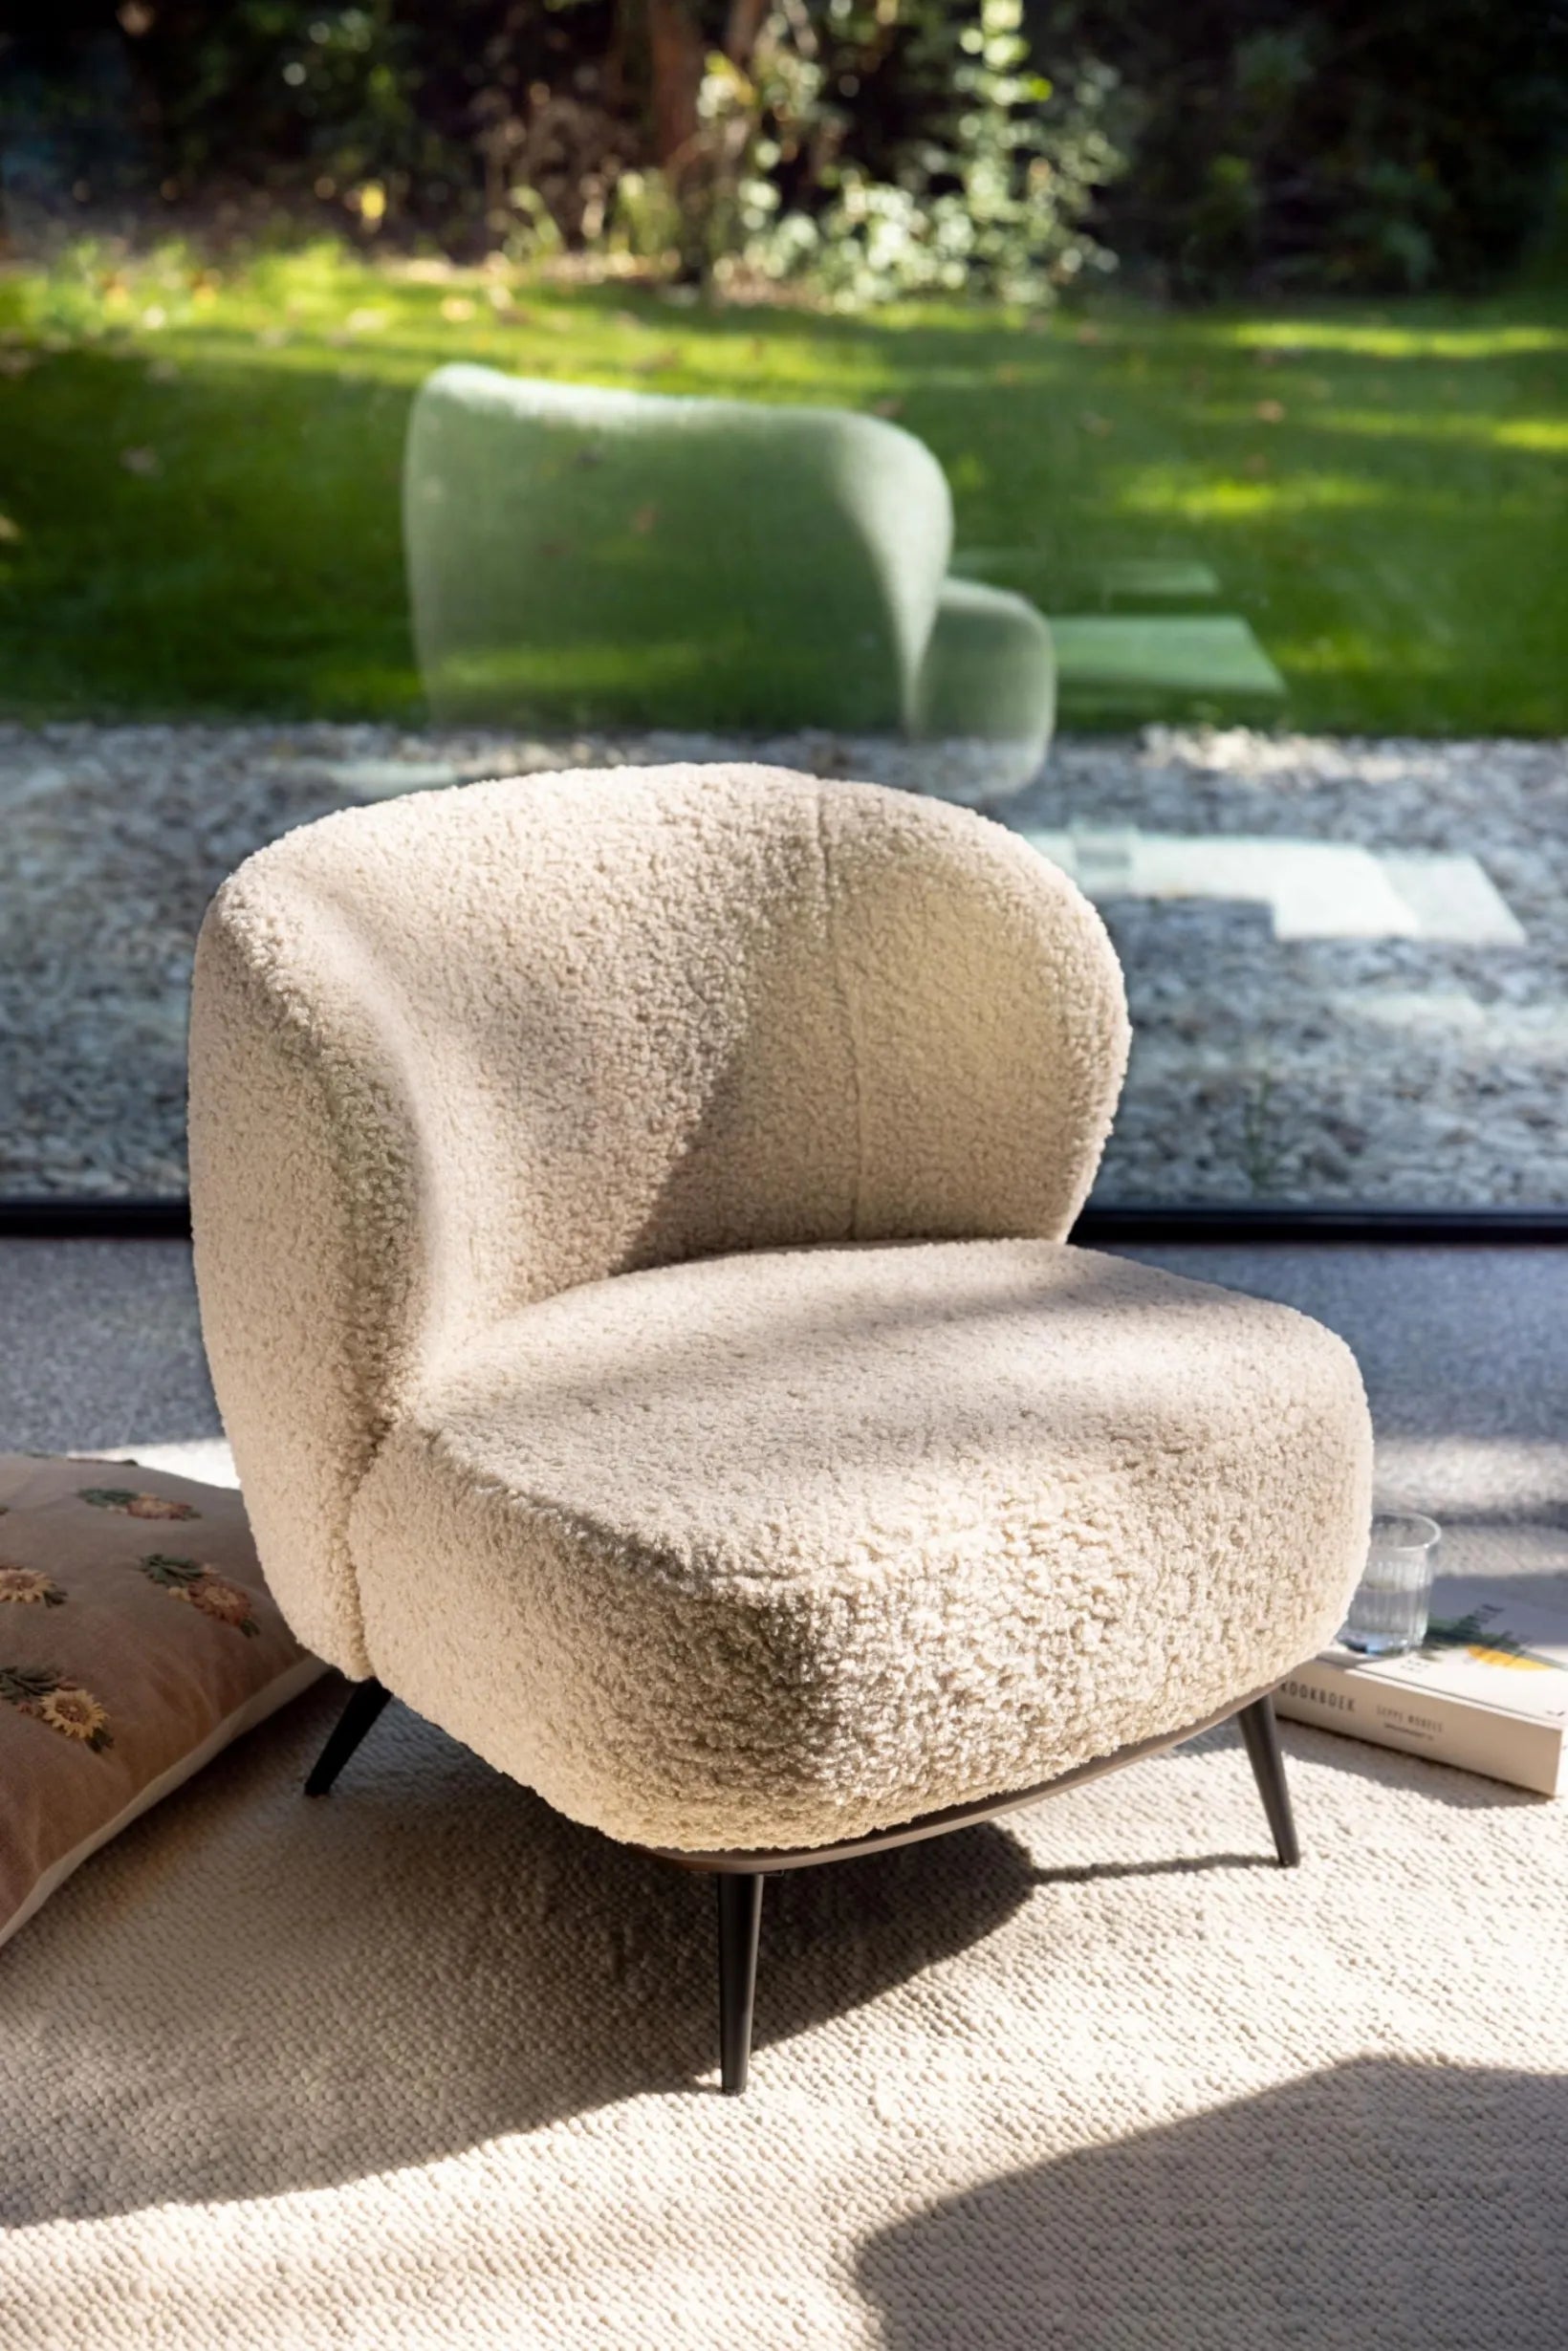 Zen Chair Teddy Sheep - Quax